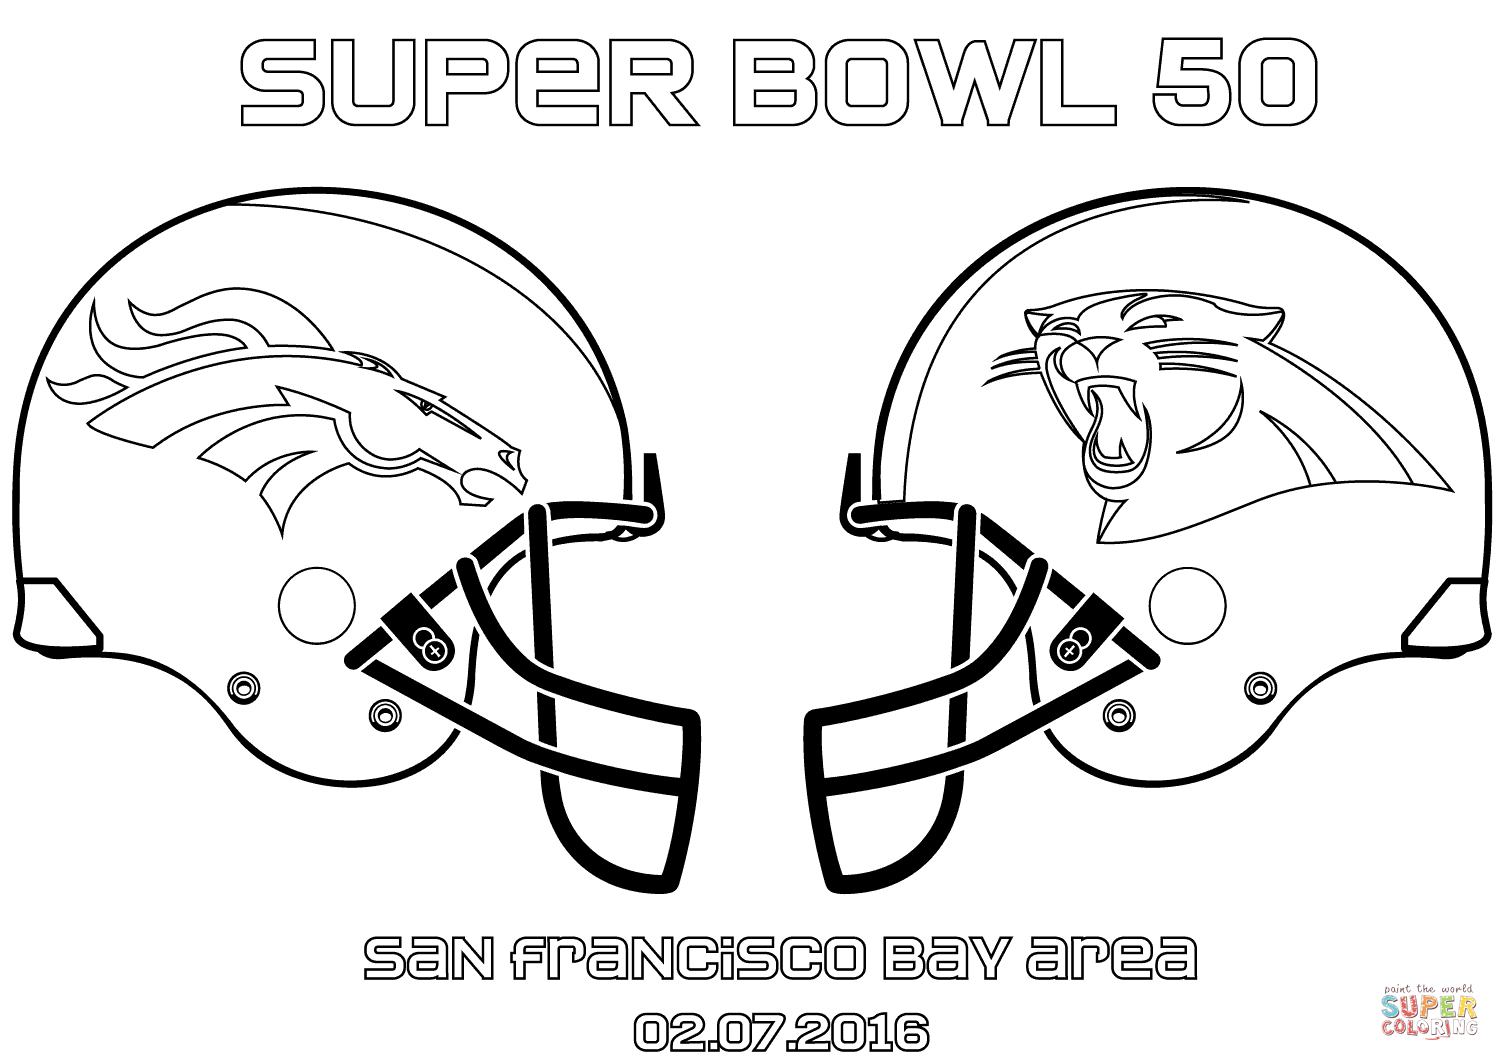 Super Bowl 50: Carolina Panthers vs. Denver Broncos coloring page